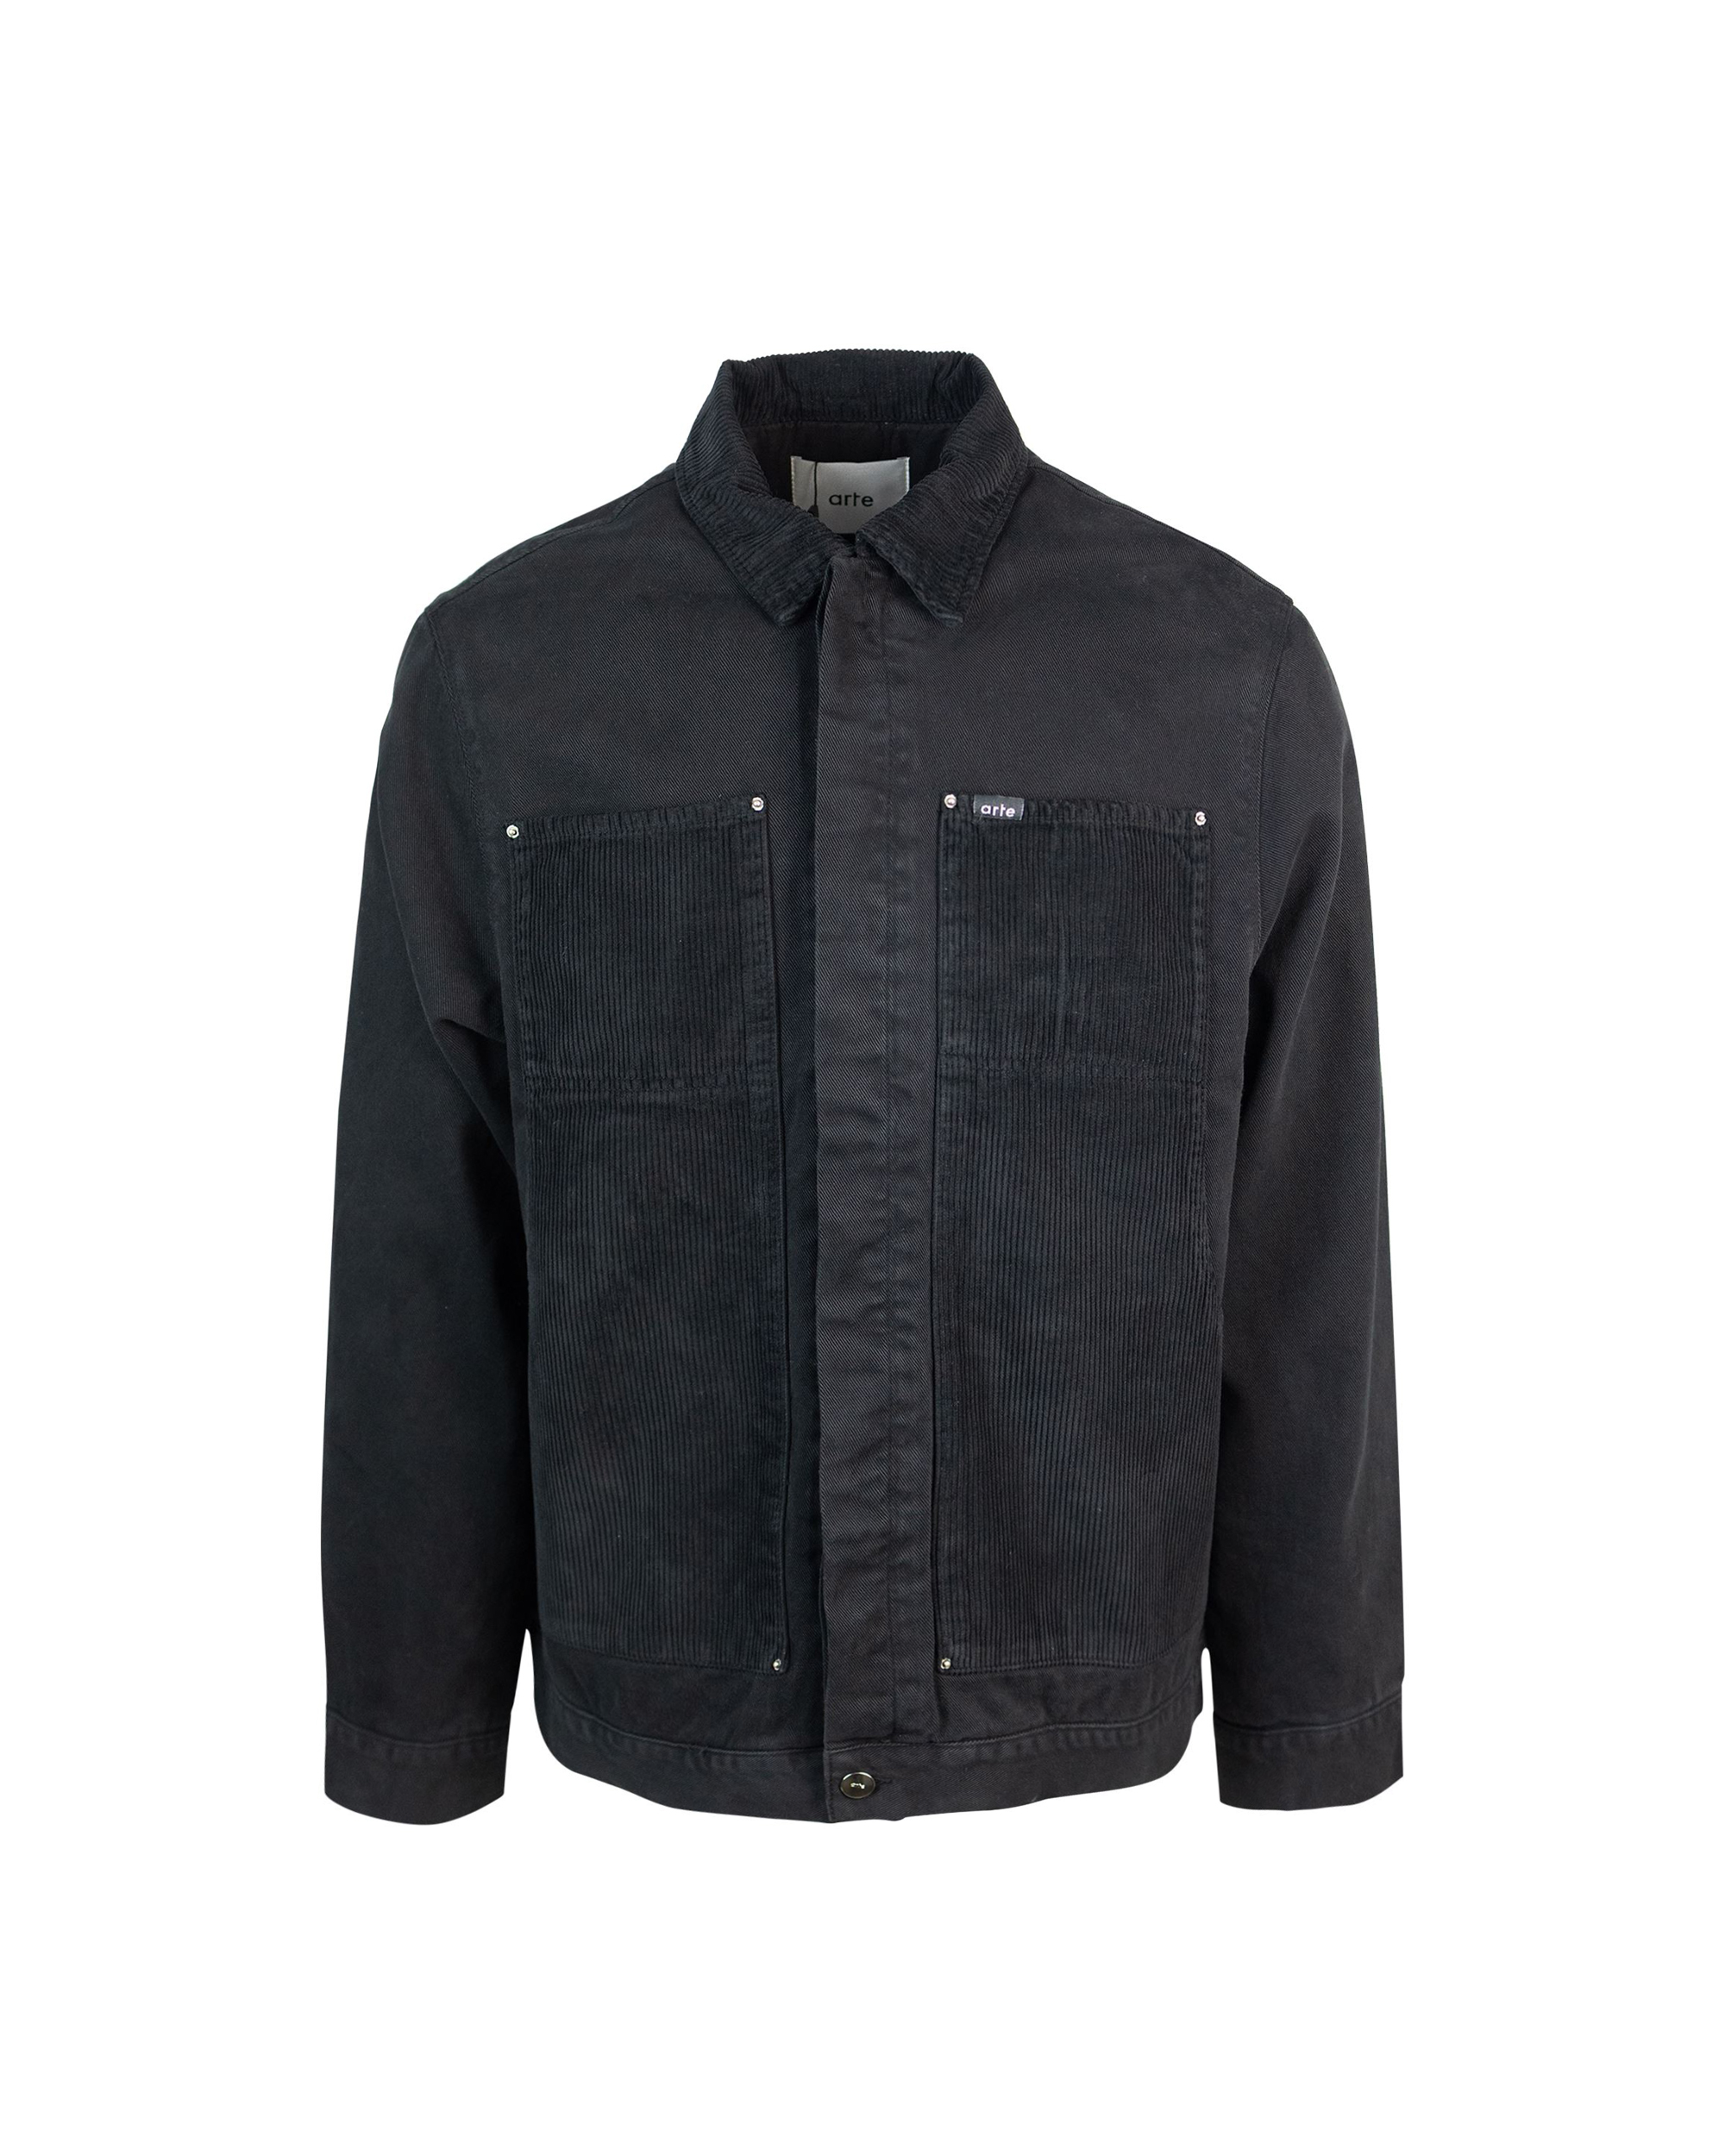 Shop Arte Antwerp Black Workwear Jacket